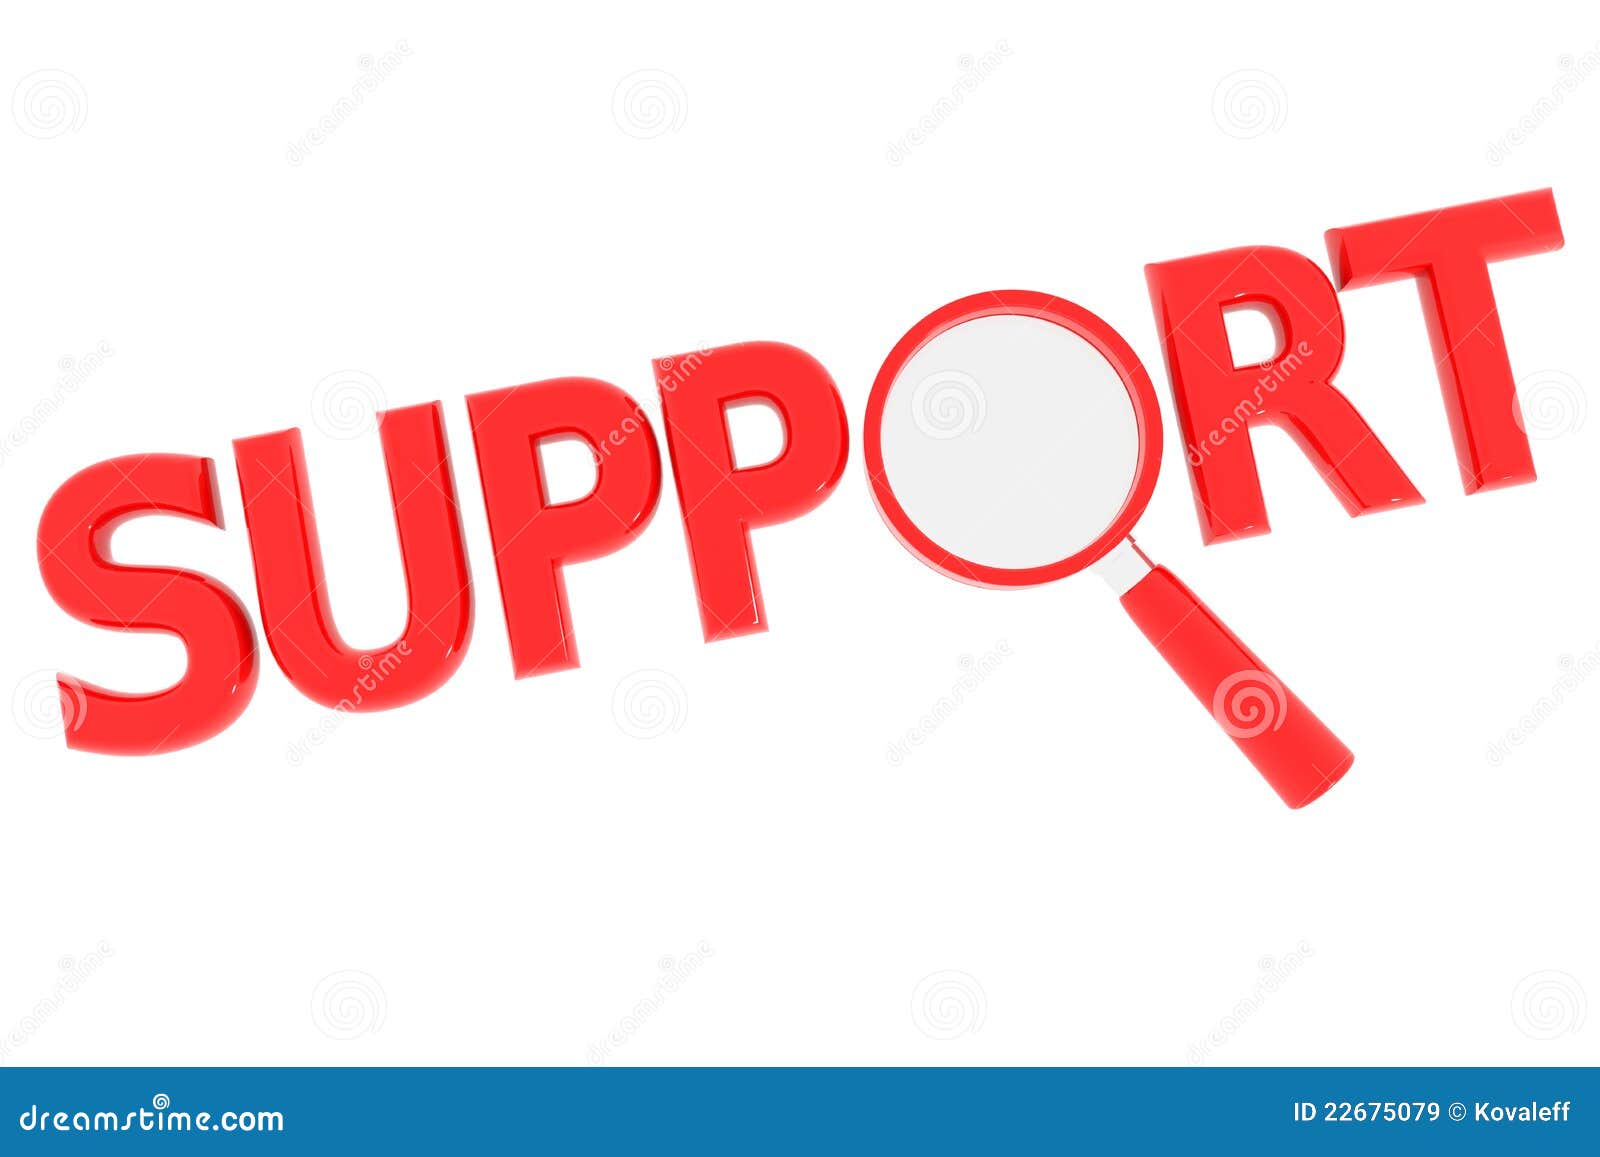 Слово support. Векторное изображение sold out. Support слово. Support слово с лупой. Sold out билетов больше нет.